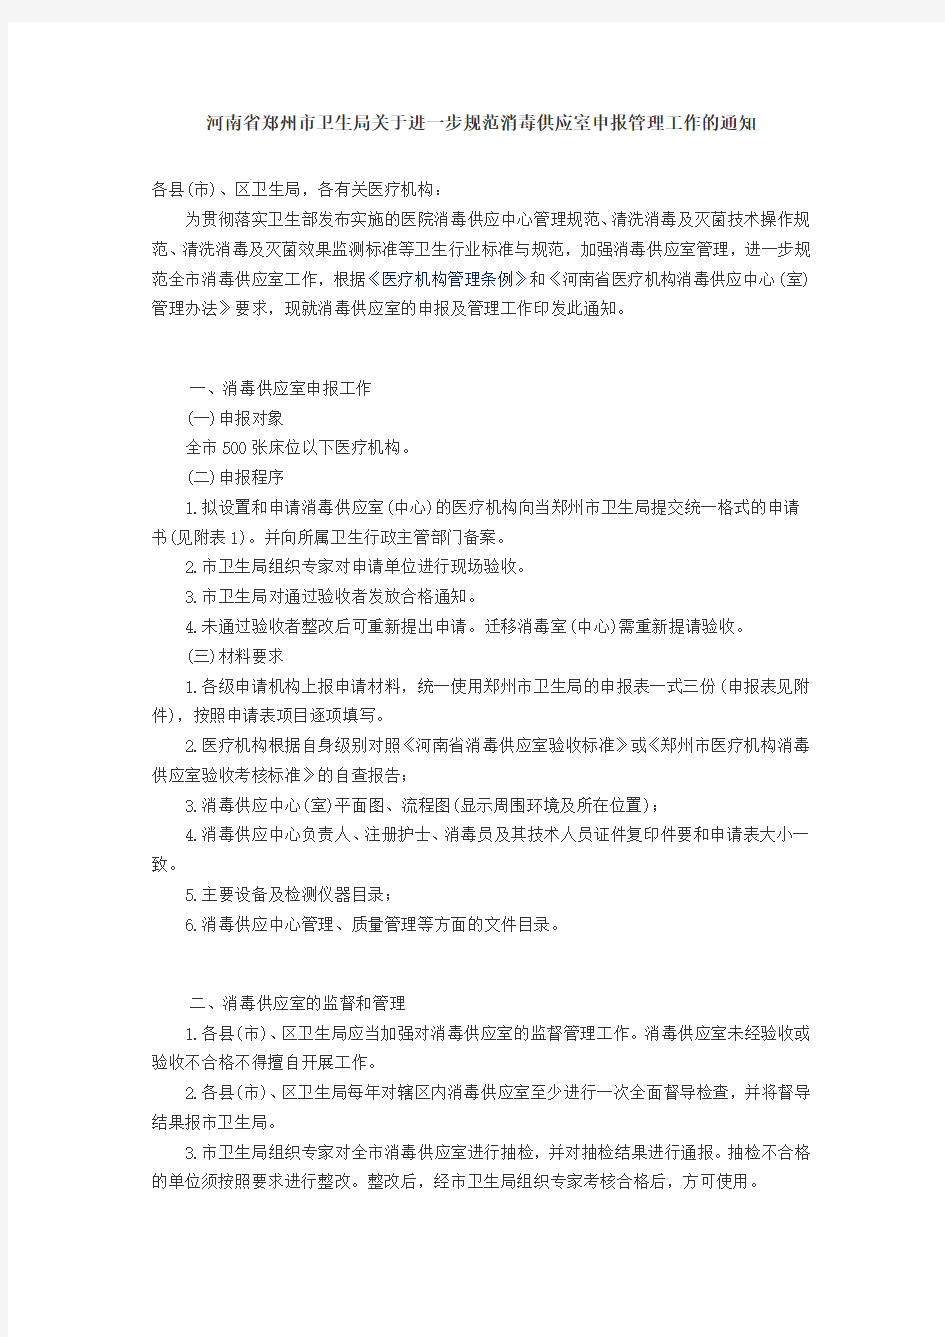 河南省郑州市卫生局关于进一步规范消毒供应室申报管理工作的通知